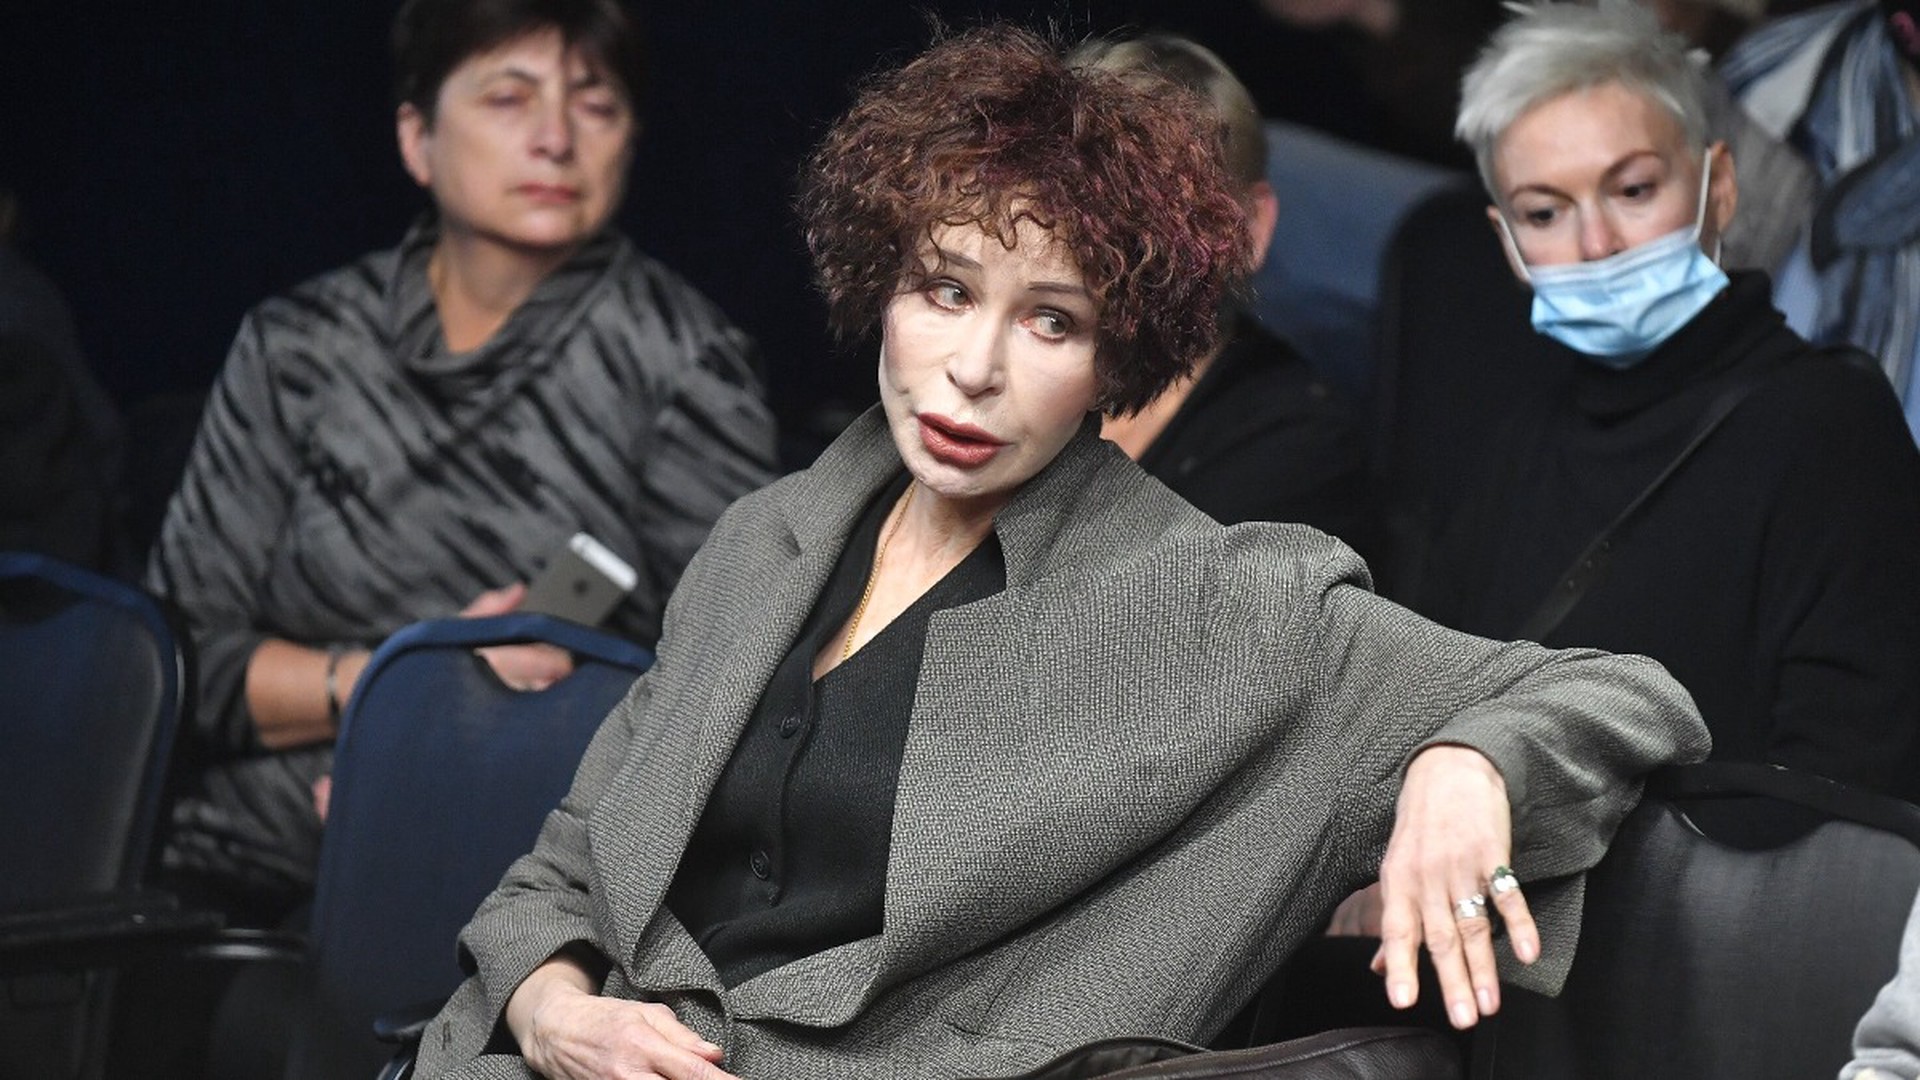 Актриса Васильева ответила назвавшему её нерукопожатной директору Театра Вахтангова